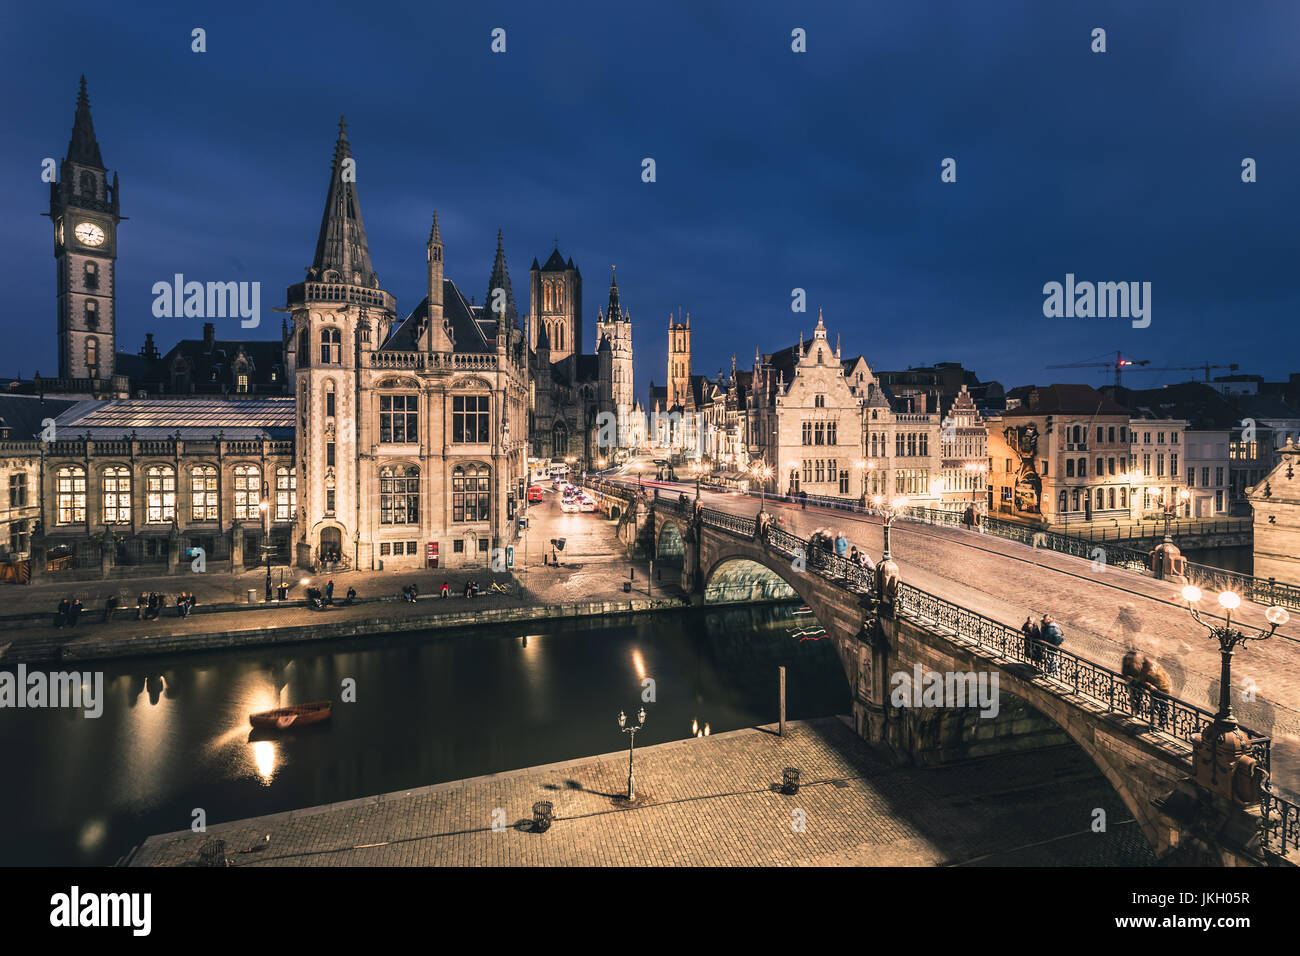 La ville médiévale de Gand (Gent) avec l'église Saint-Nicolas (Sint-Niklaaskerk) et beffroi de Pont Saint Michel (Sint-Michielsbrug) Banque D'Images